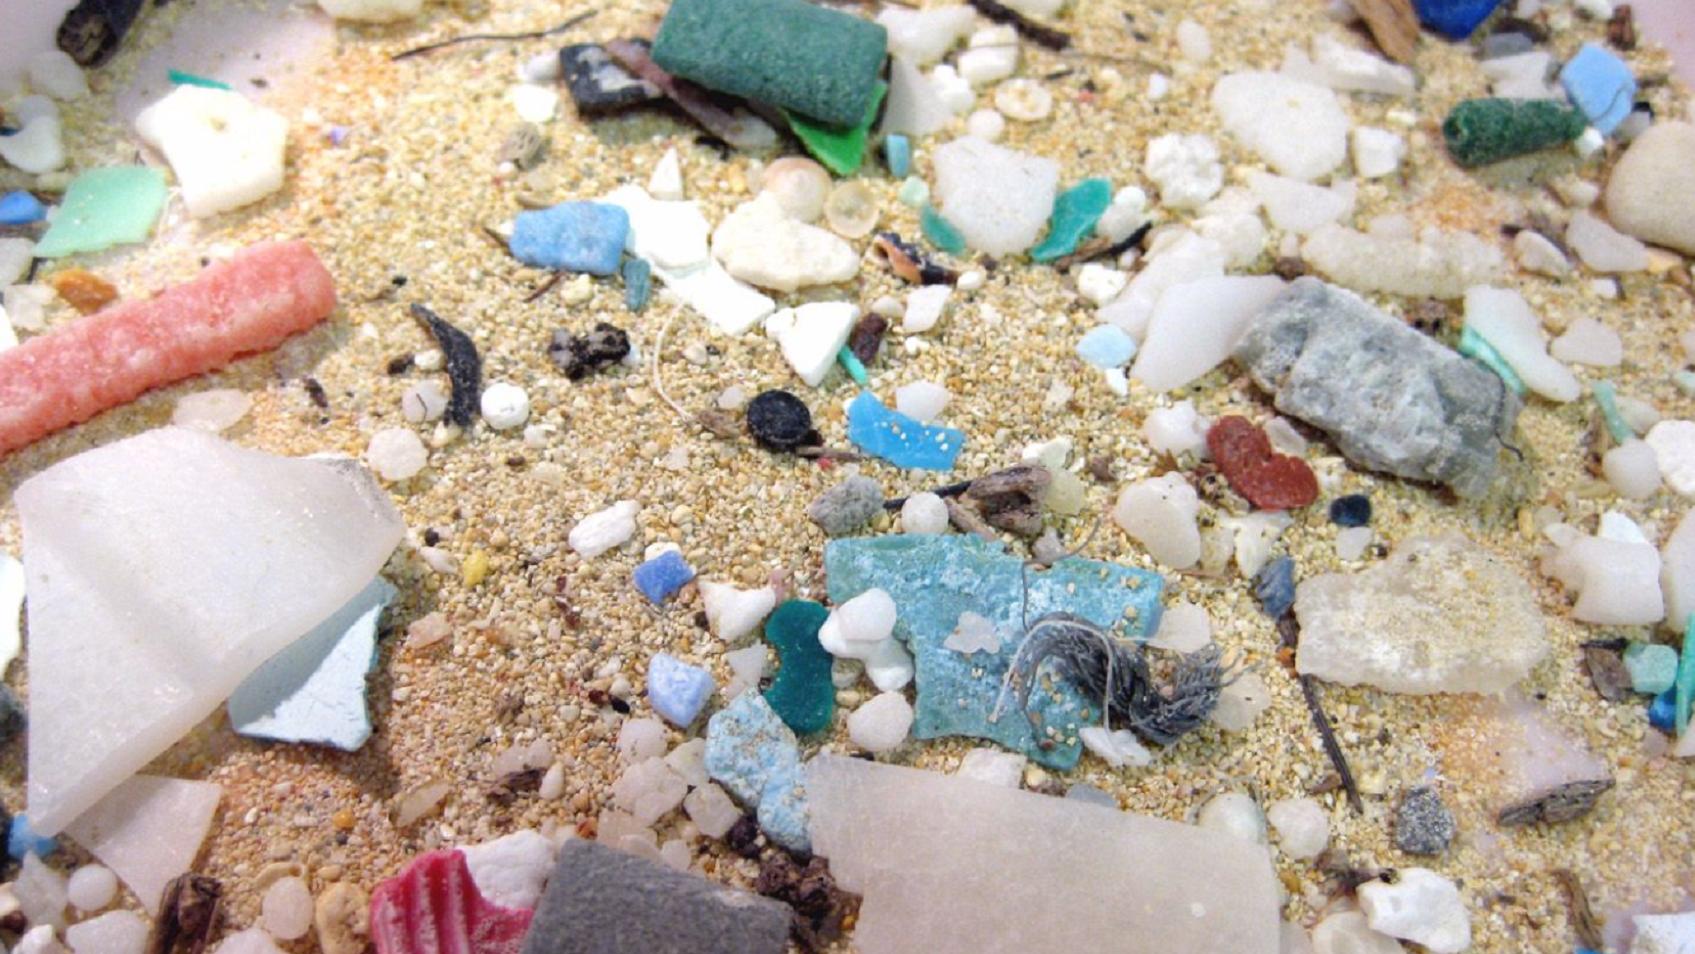 Micro plastics found in the ocean.